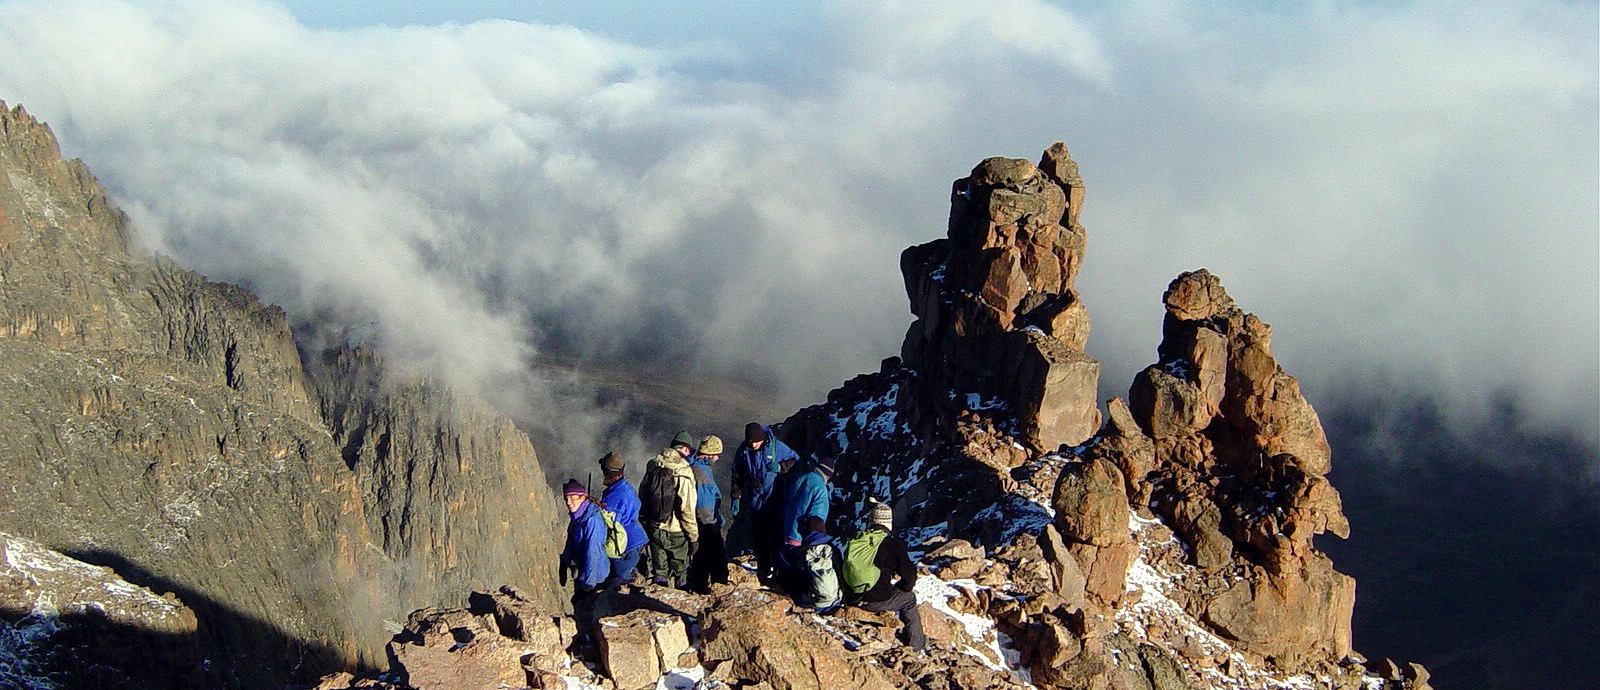 6 Days Mount Kenya Hiking Adventure